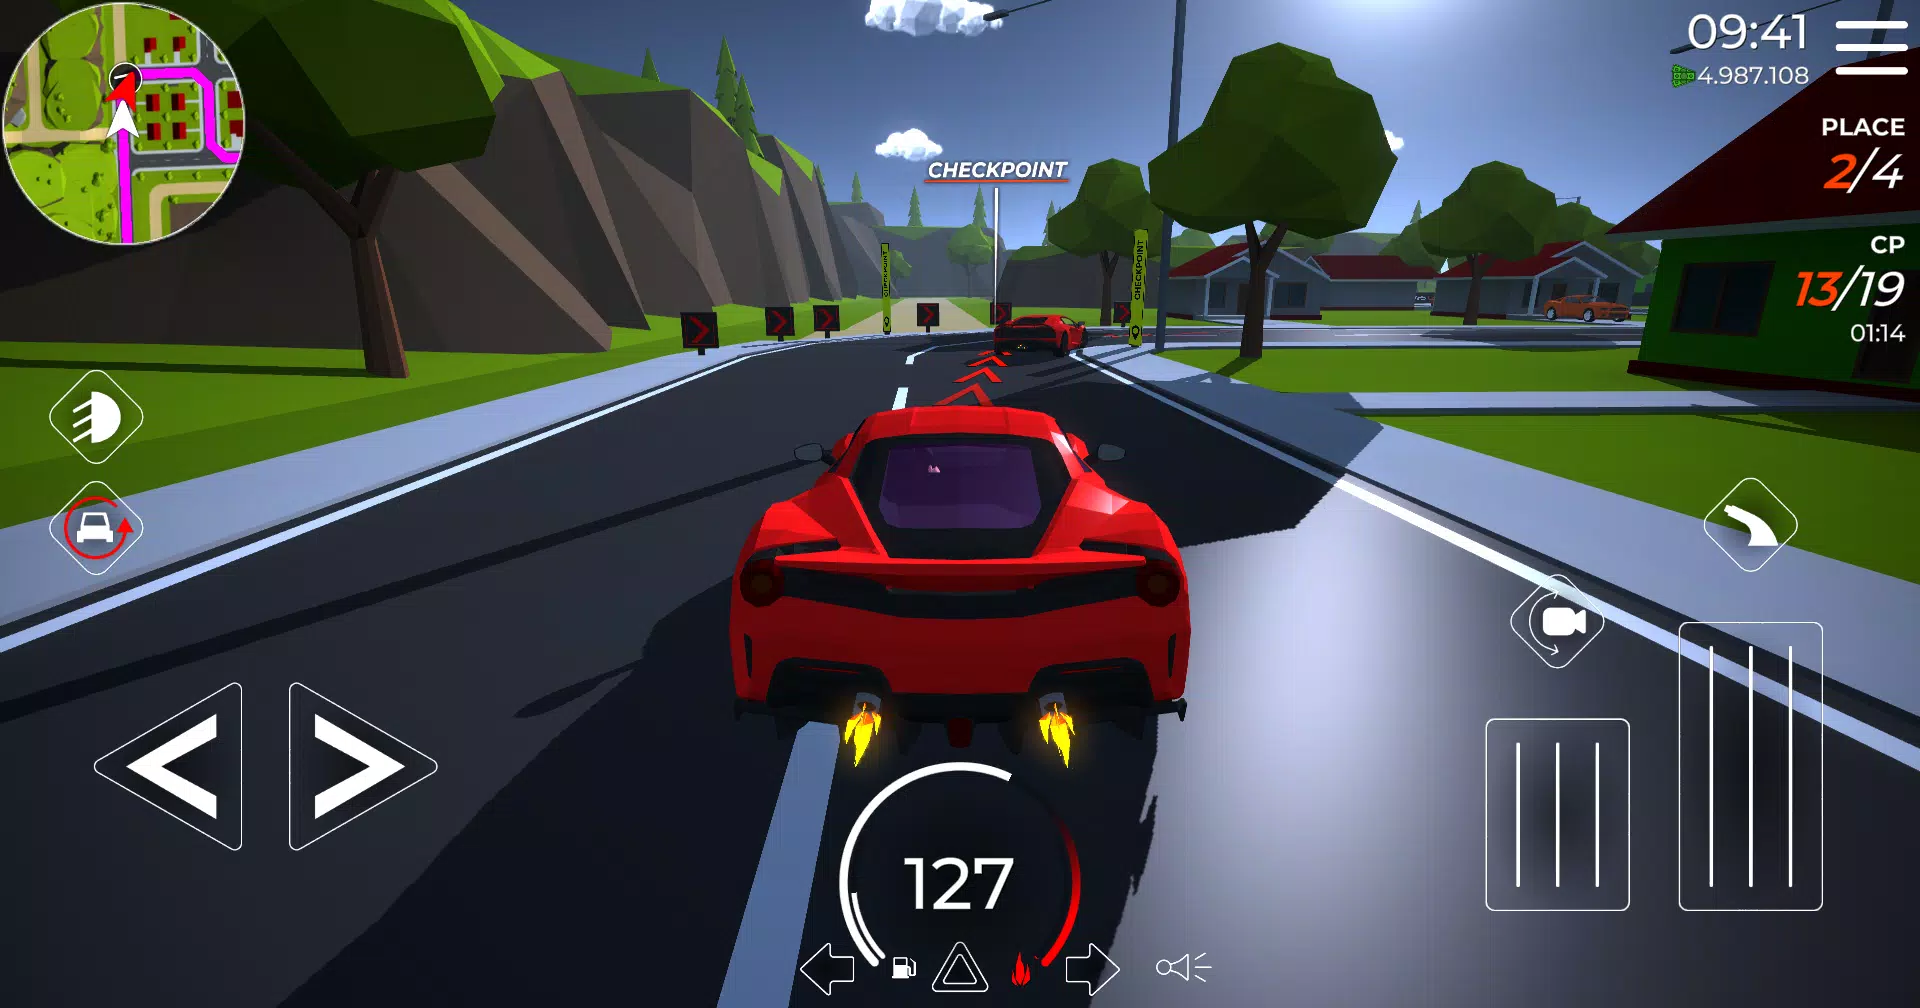 Extreme Car Driving Simulator Apk Mod Dinheiro Infinito gameplay 